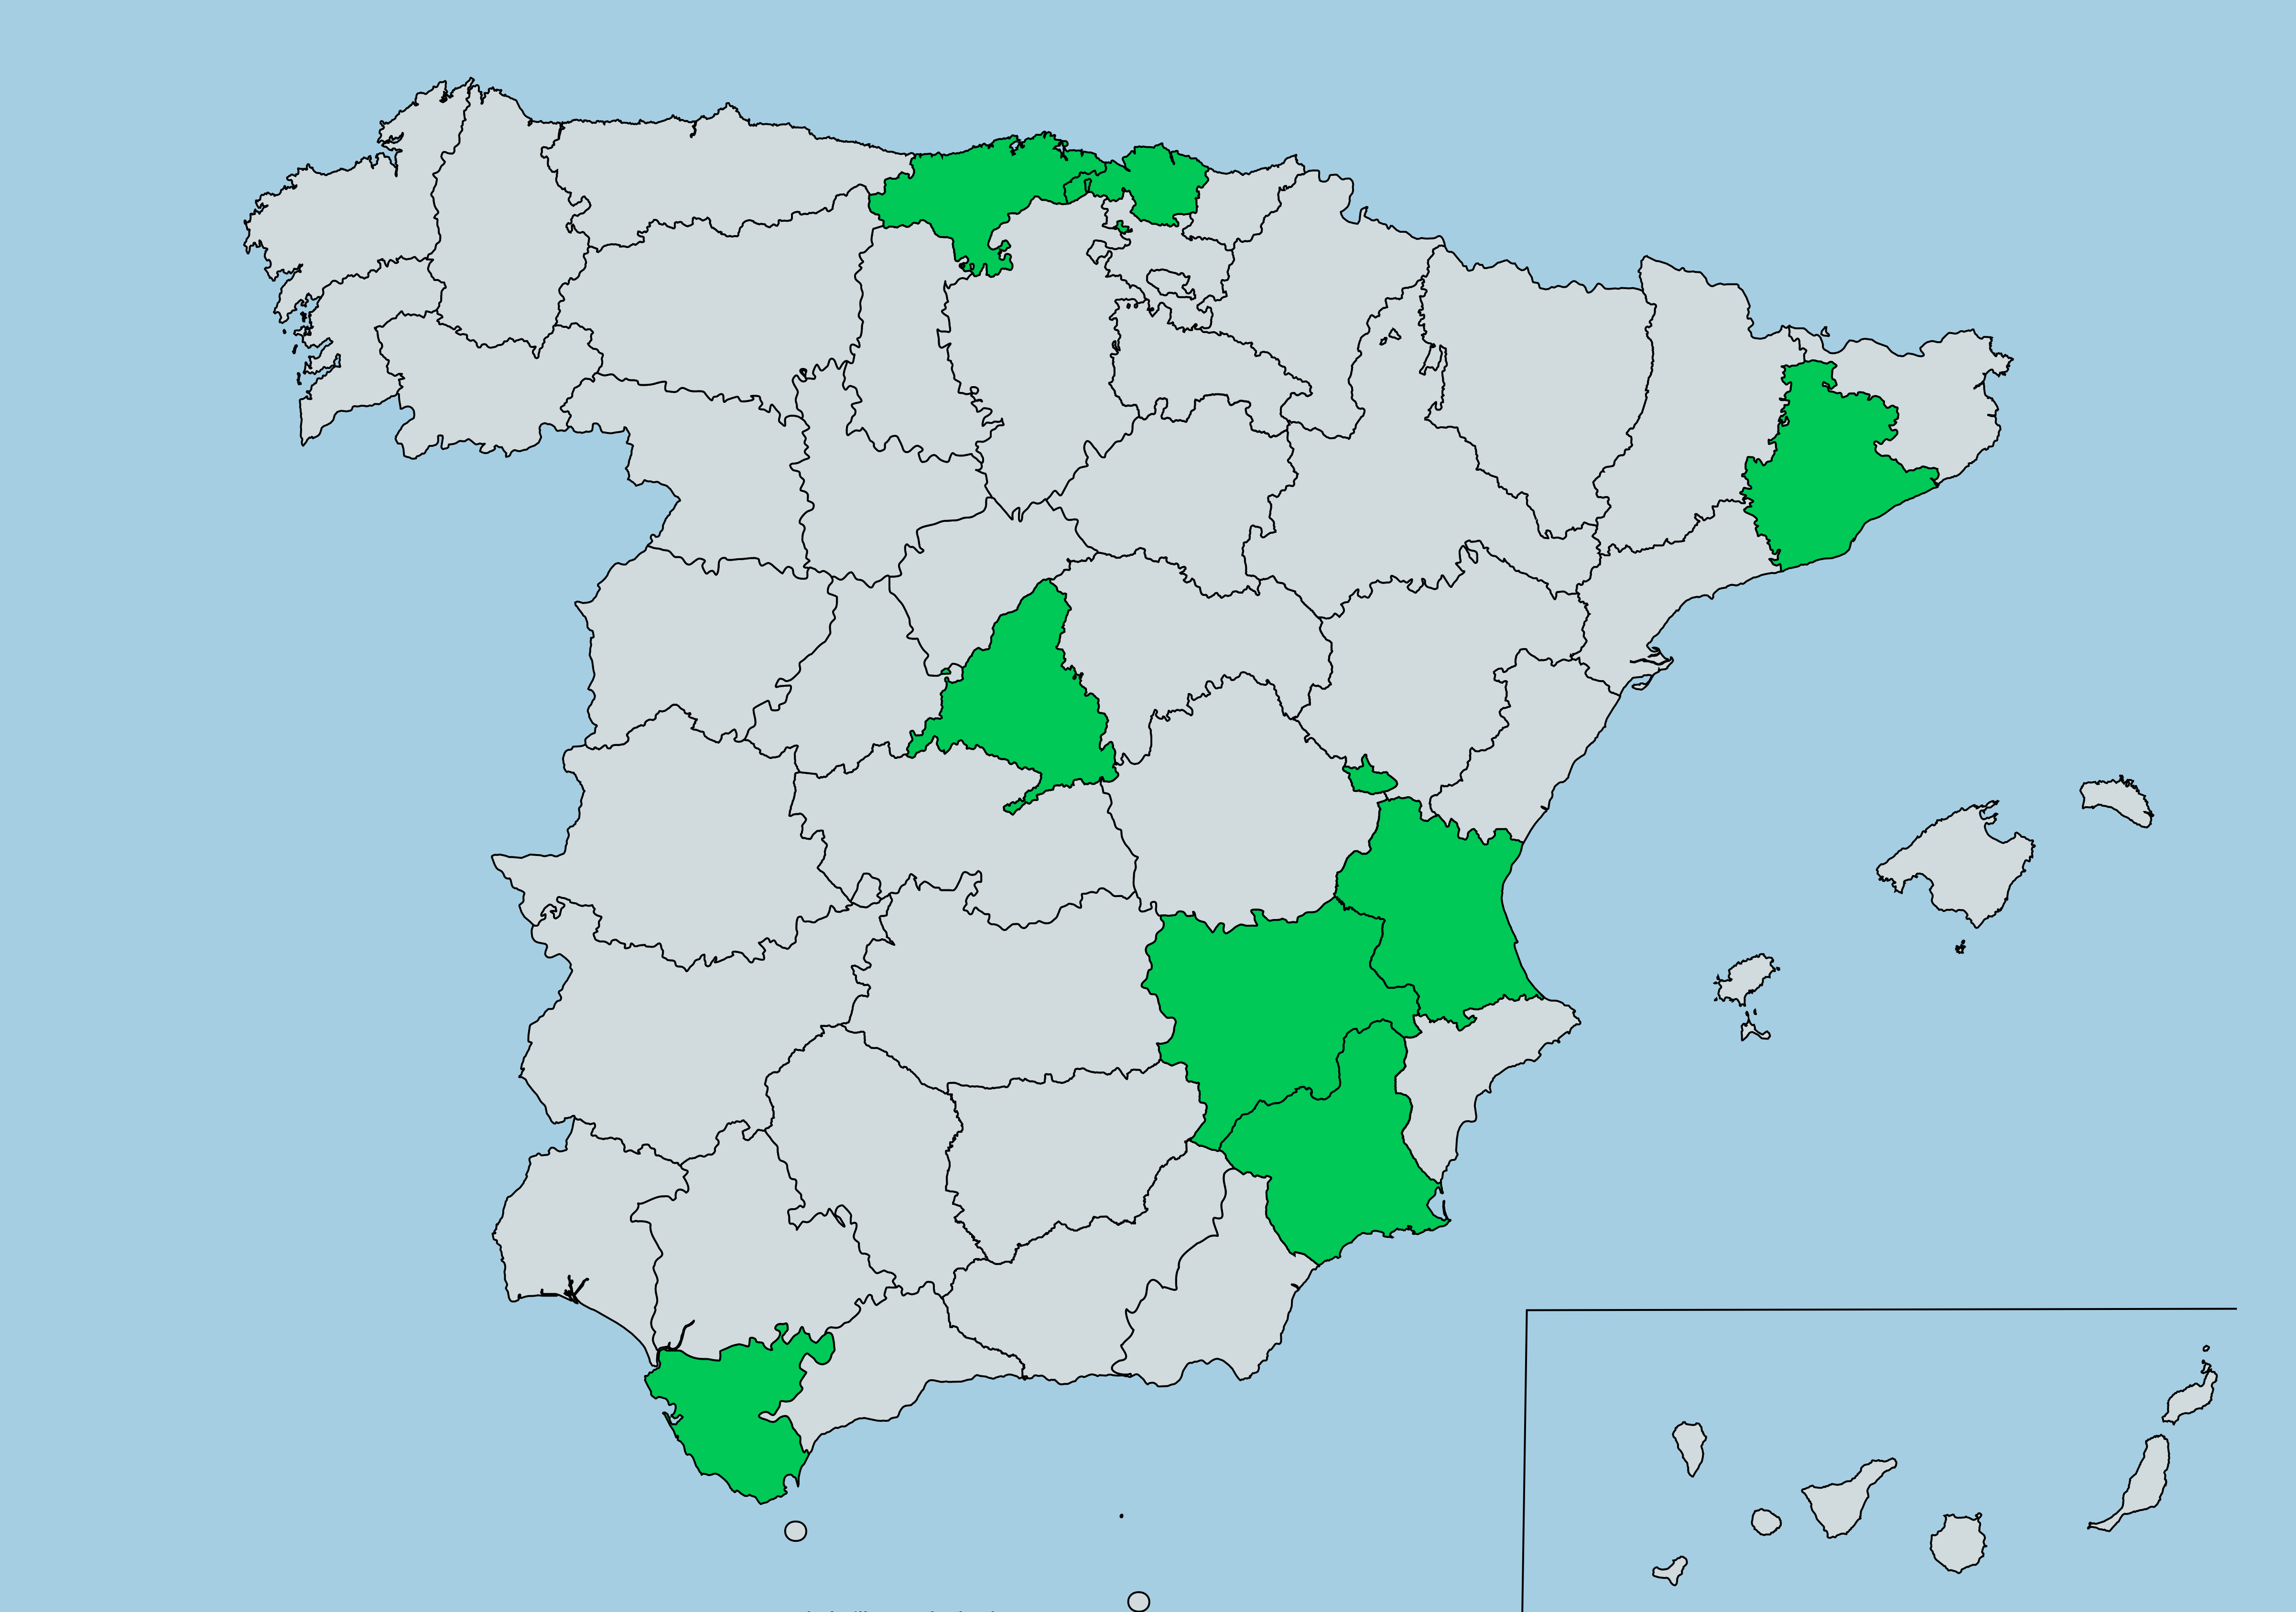 Grupos en España